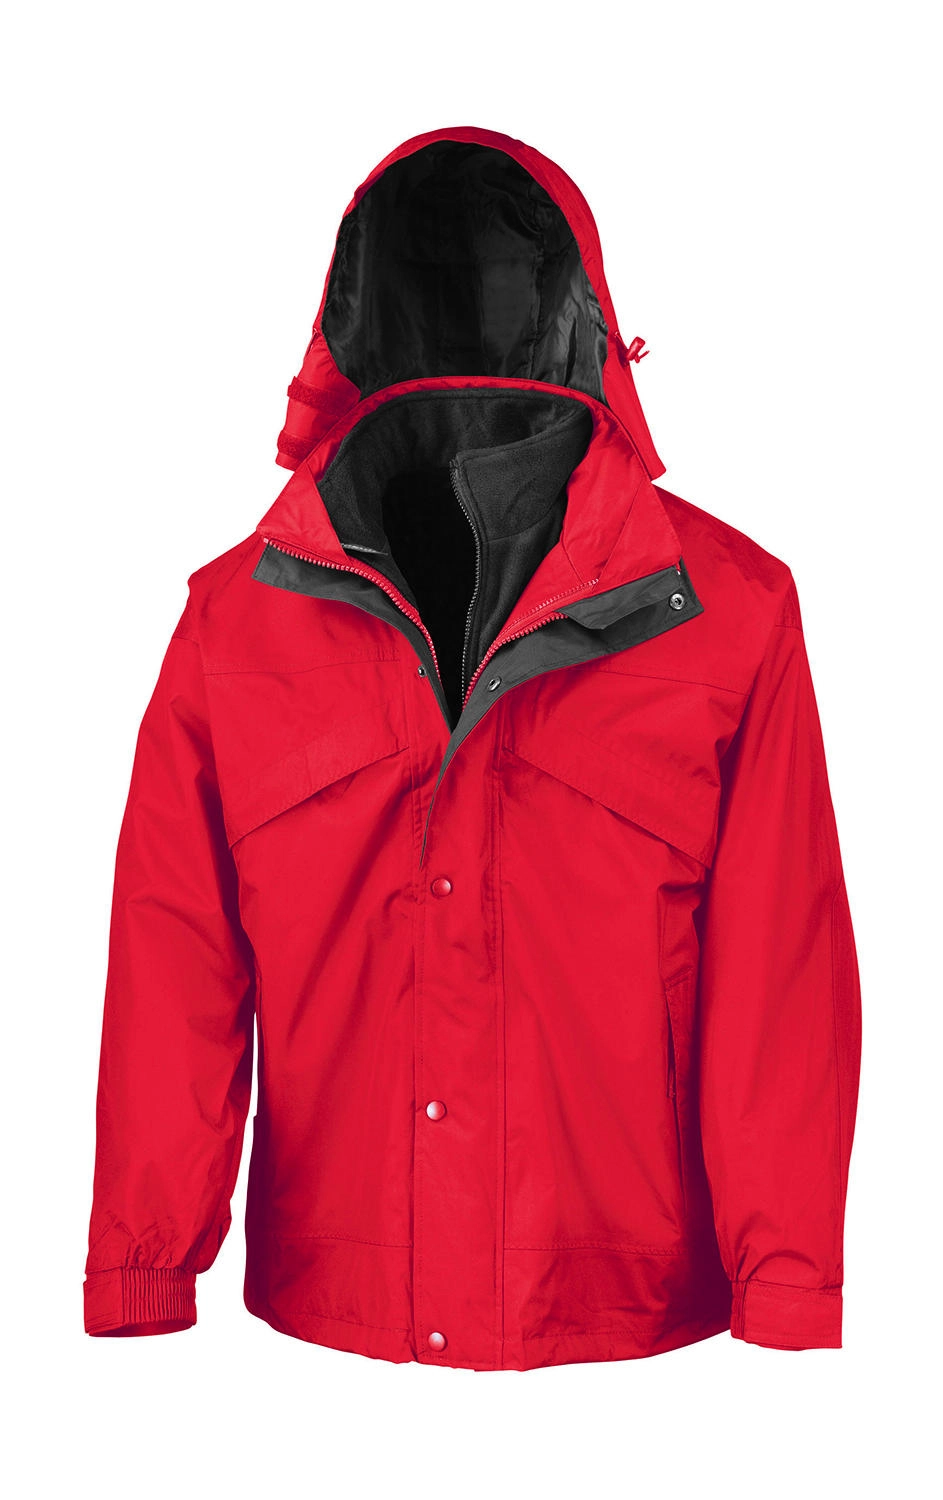 3-in-1 Jacket with Fleece zum Besticken und Bedrucken in der Farbe Red mit Ihren Logo, Schriftzug oder Motiv.